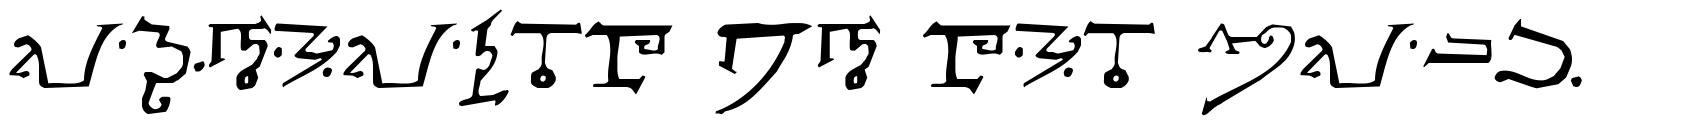 Alphabet of the Magi schriftart